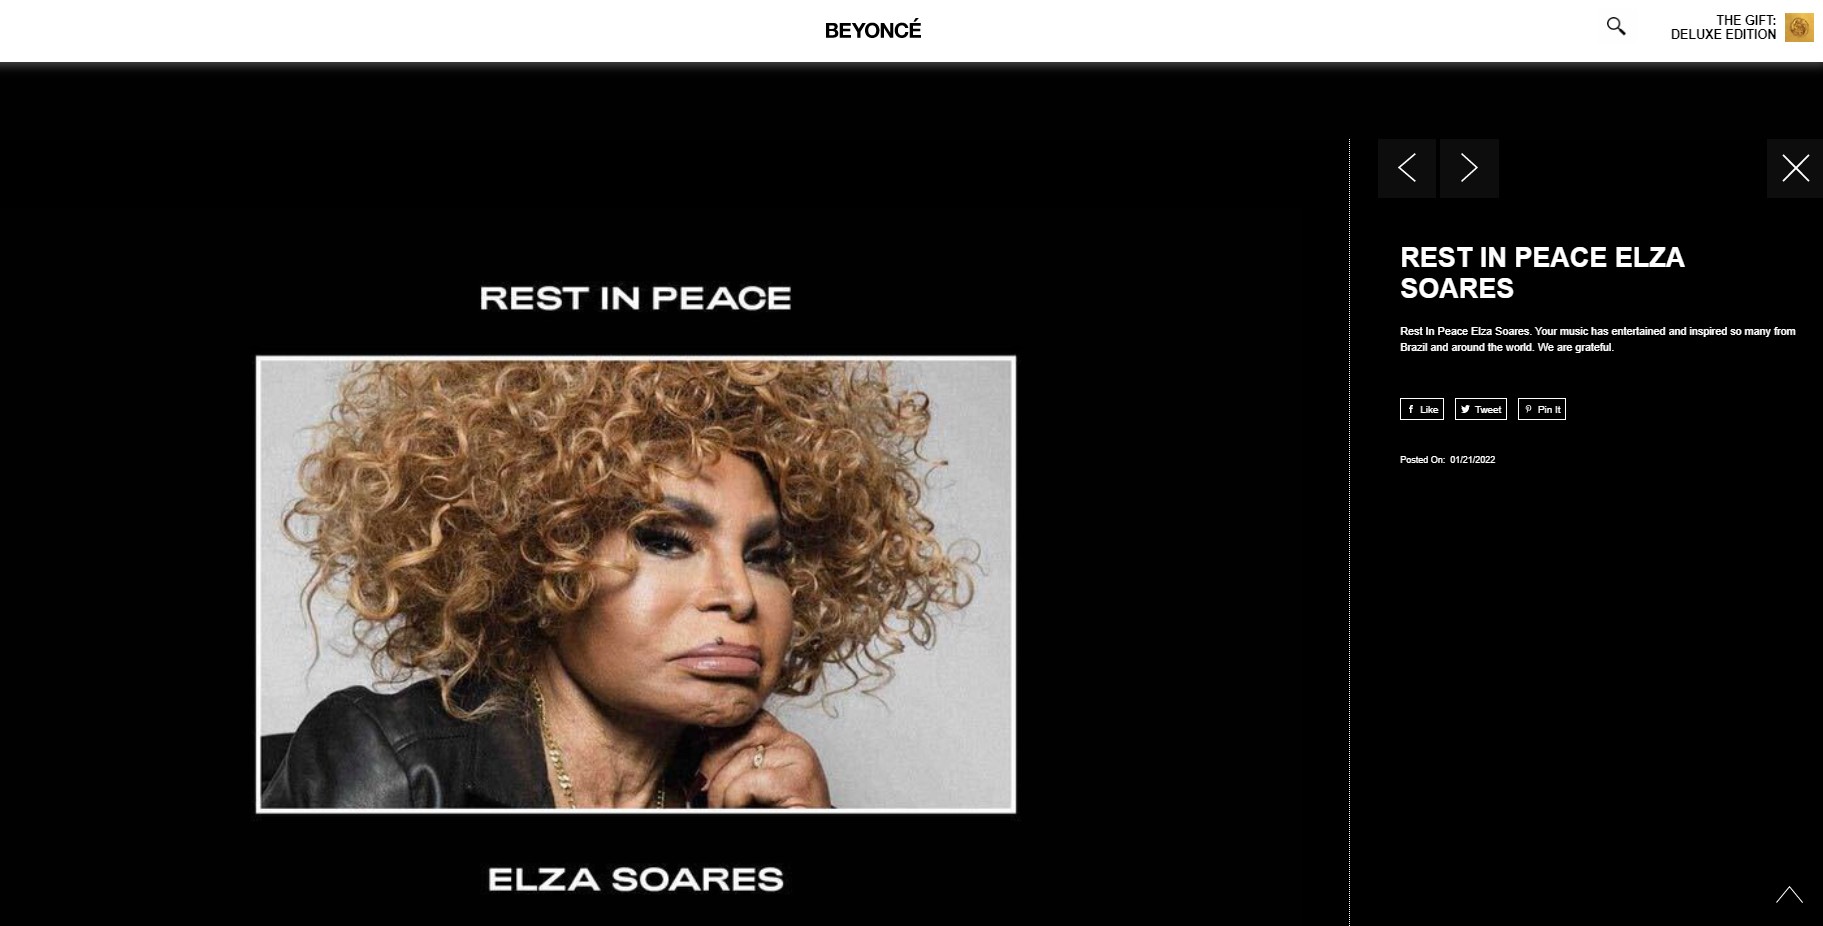 Beyoncé presta homenagem a Elza Soares em site oficial: 'Inspirou muitos no Brasil e ao redor do mundo'